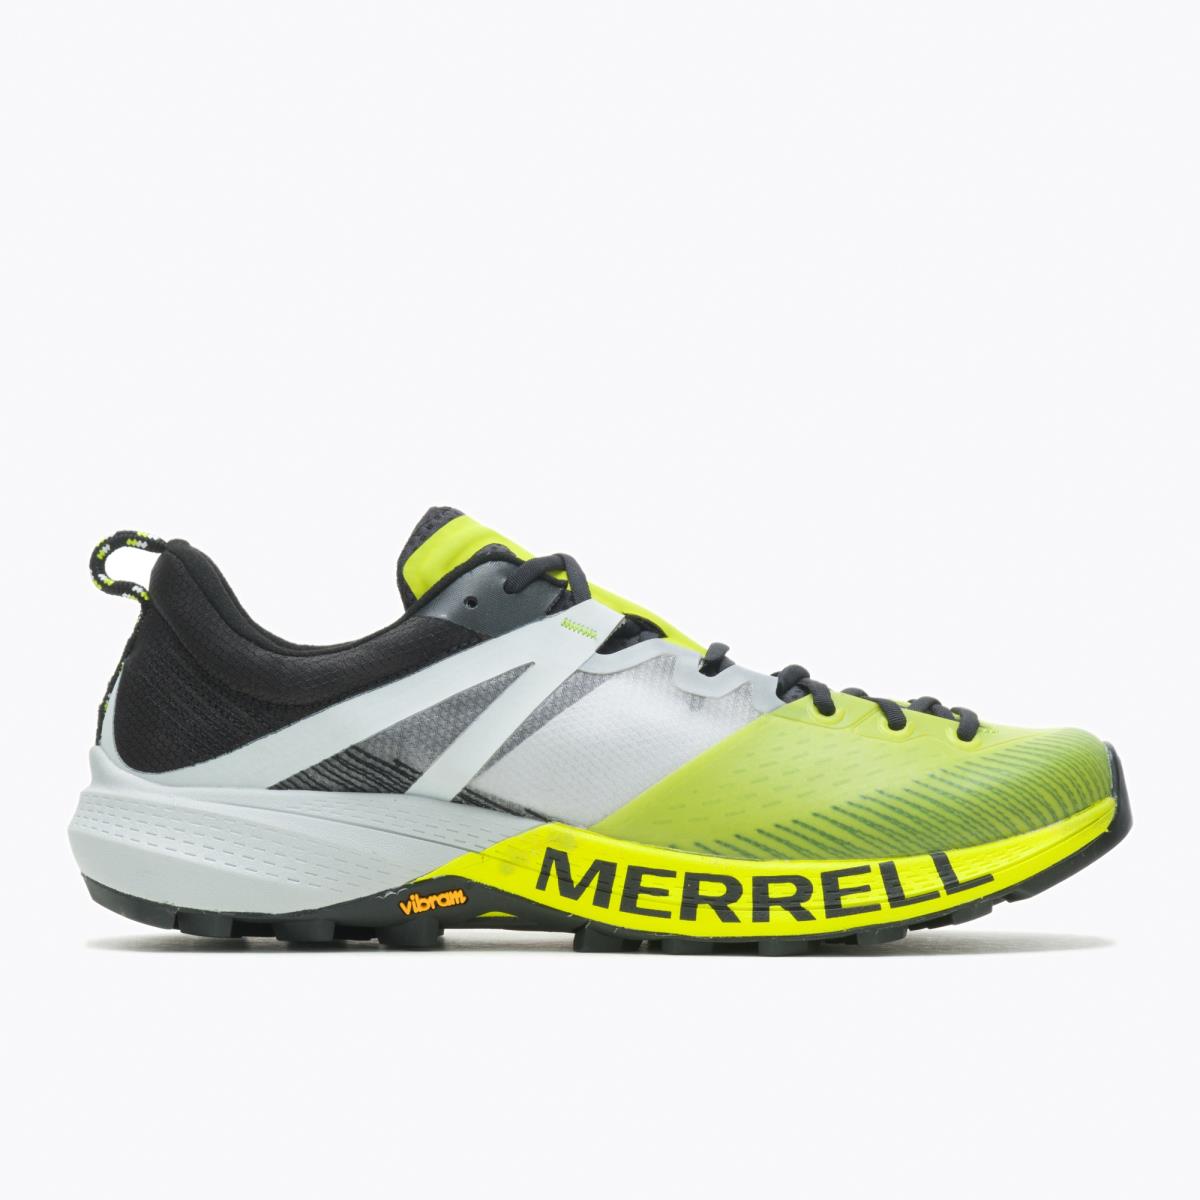 Merrell Men Mtl Mqm Shoes Hi Viz